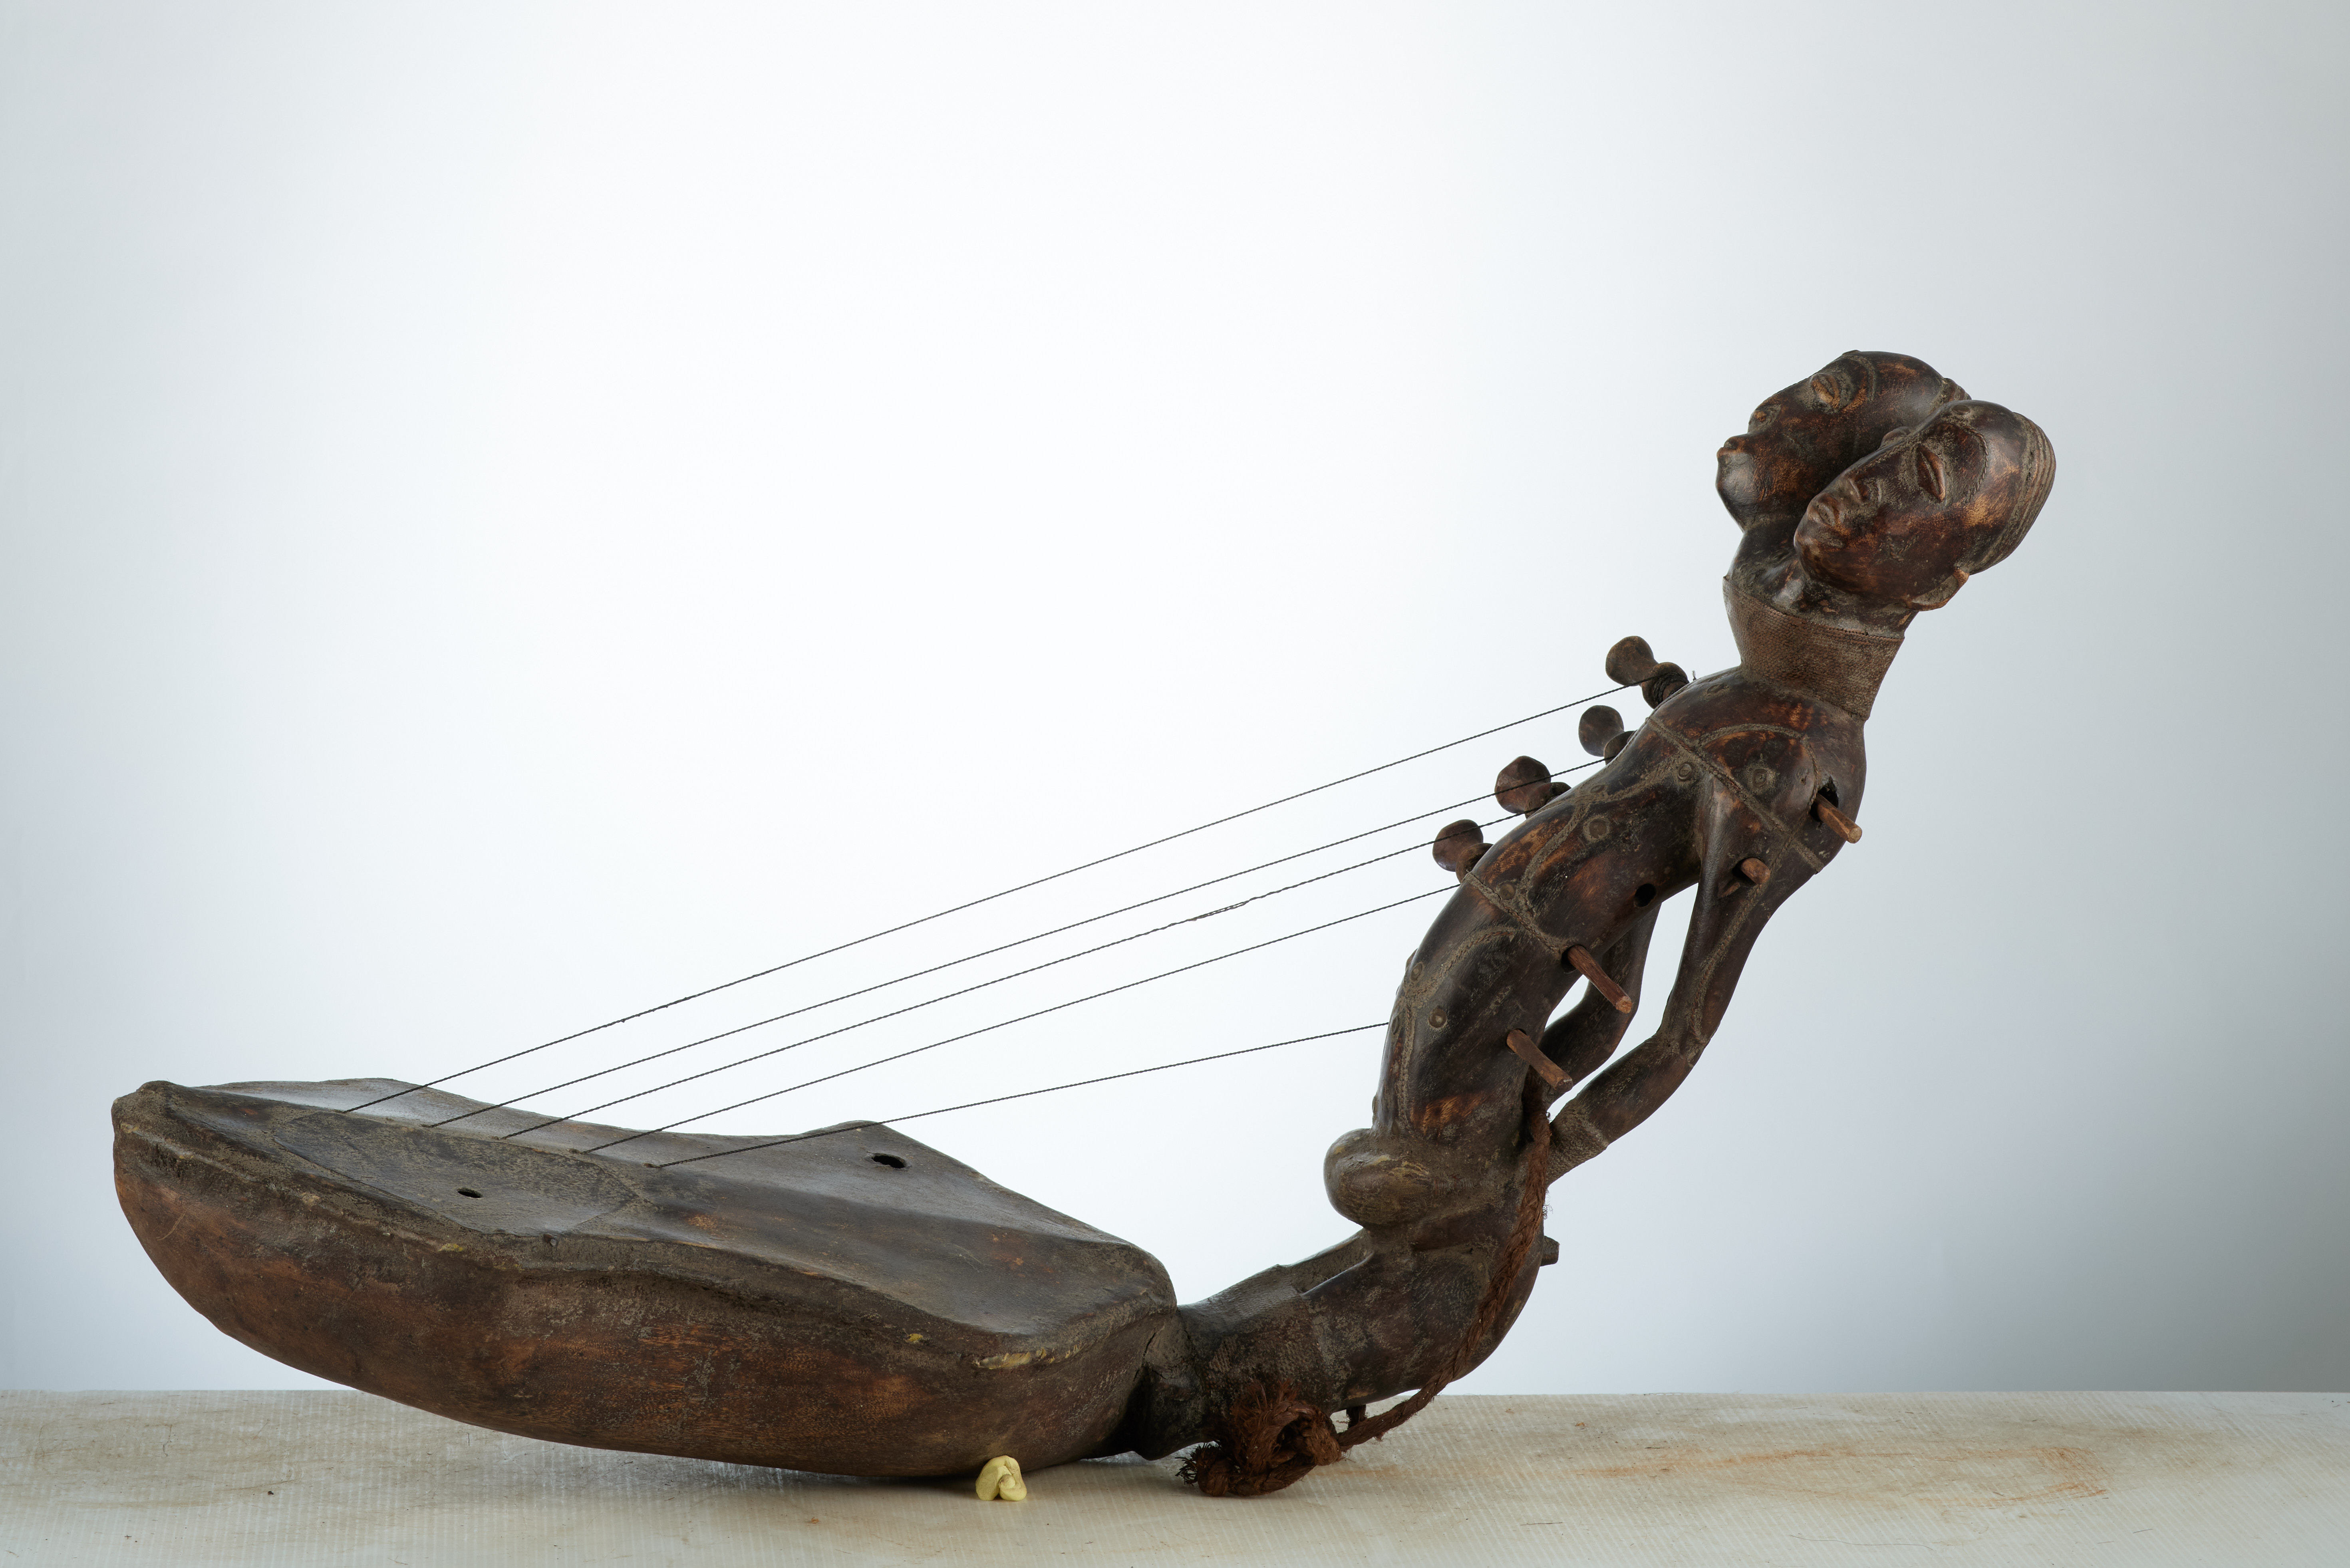 Mangbetu ( harpe ), d`afrique : rep.dem.Congo, statuette Mangbetu ( harpe ), masque ancien africain Mangbetu ( harpe ), art du rep.dem.Congo - Art Africain, collection privées Belgique. Statue africaine de la tribu des Mangbetu ( harpe ), provenant du rep.dem.Congo, 1921:Instrument de musique Mangbetu .Harpe anthropomorphe cordophone à 5 cordes,sculpté à double tête. (col. Minga zaire 1971) milieu du 20eme sc.. art,culture,masque,statue,statuette,pot,ivoire,exposition,expo,masque original,masques,statues,statuettes,pots,expositions,expo,masques originaux,collectionneur d`art,art africain,culture africaine,masque africain,statue africaine,statuette africaine,pot africain,ivoire africain,exposition africain,expo africain,masque origina africainl,masques africains,statues africaines,statuettes africaines,pots africains,expositions africaines,expo africaines,masques originaux  africains,collectionneur d`art africain